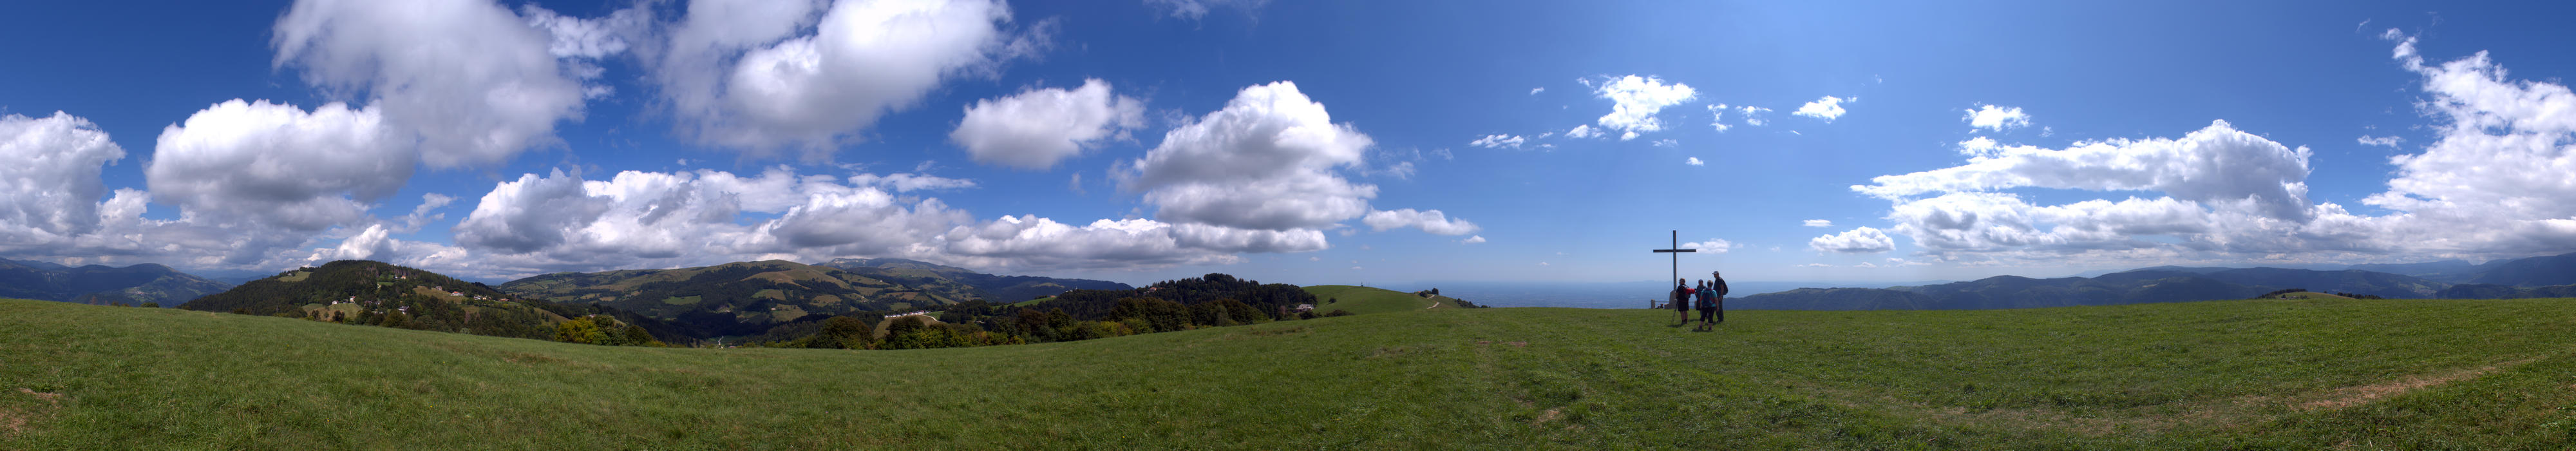 Col Fenilon, Monte Grappa - fotografia panoramica